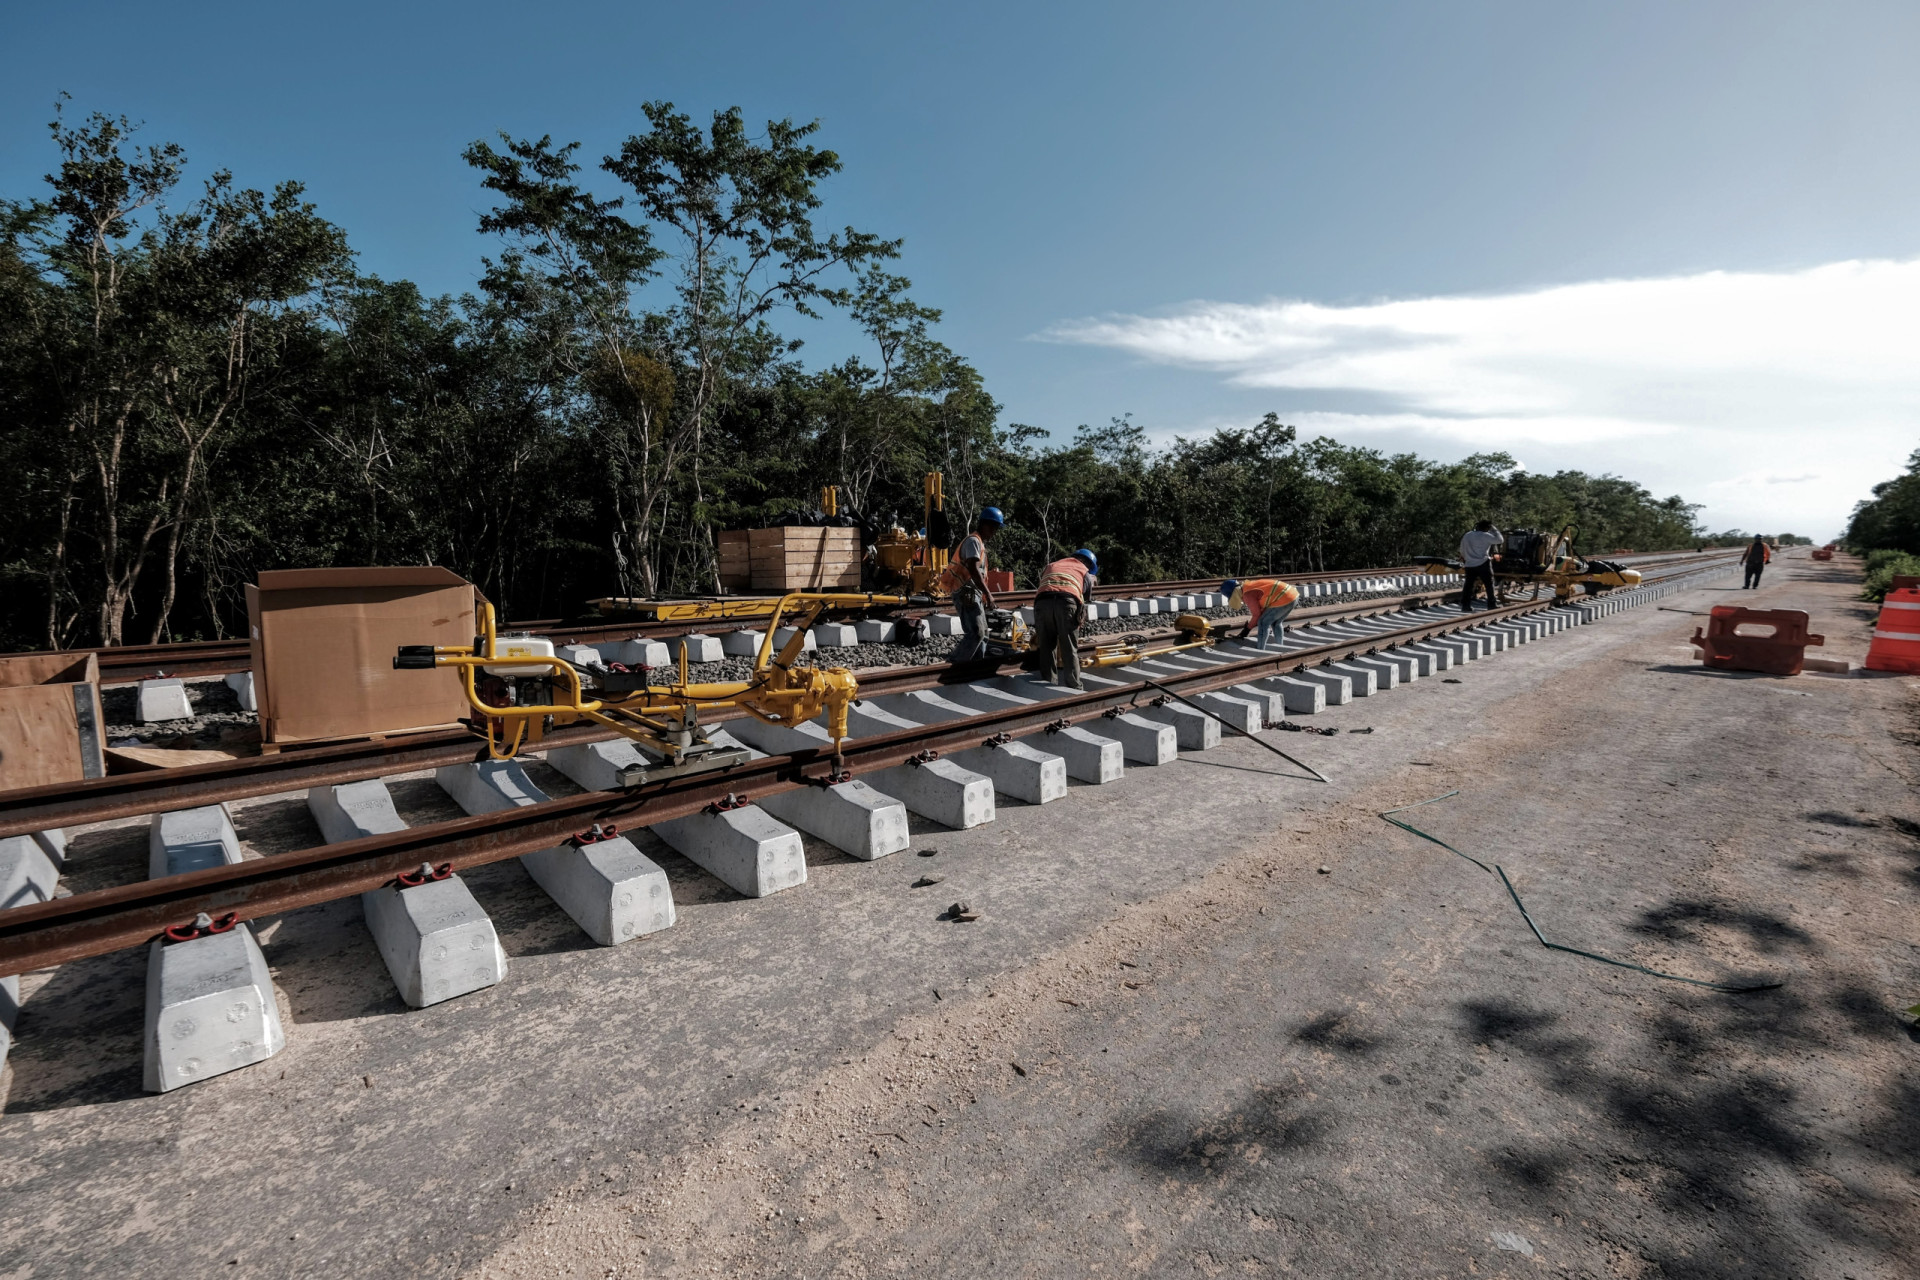 <p>Le Tren Maya ("Train Maya") devait coûter environ 20 milliards de dollars, mais certaines sources font état de chiffres beaucoup plus élevés. Le train traverse la péninsule du Yucatán, reliant les stations balnéaires aux sites mayas. Il a été partiellement inauguré en décembre 2023 et devrait être pleinement opérationnel à la mi-2024.</p><p><a href="https://www.msn.com/fr-ca/community/channel/vid-7xx8mnucu55yw63we9va2gwr7uihbxwc68fxqp25x6tg4ftibpra?cvid=94631541bc0f4f89bfd59158d696ad7e">Suivez-nous et accédez tous les jours à du contenu exclusif</a></p>